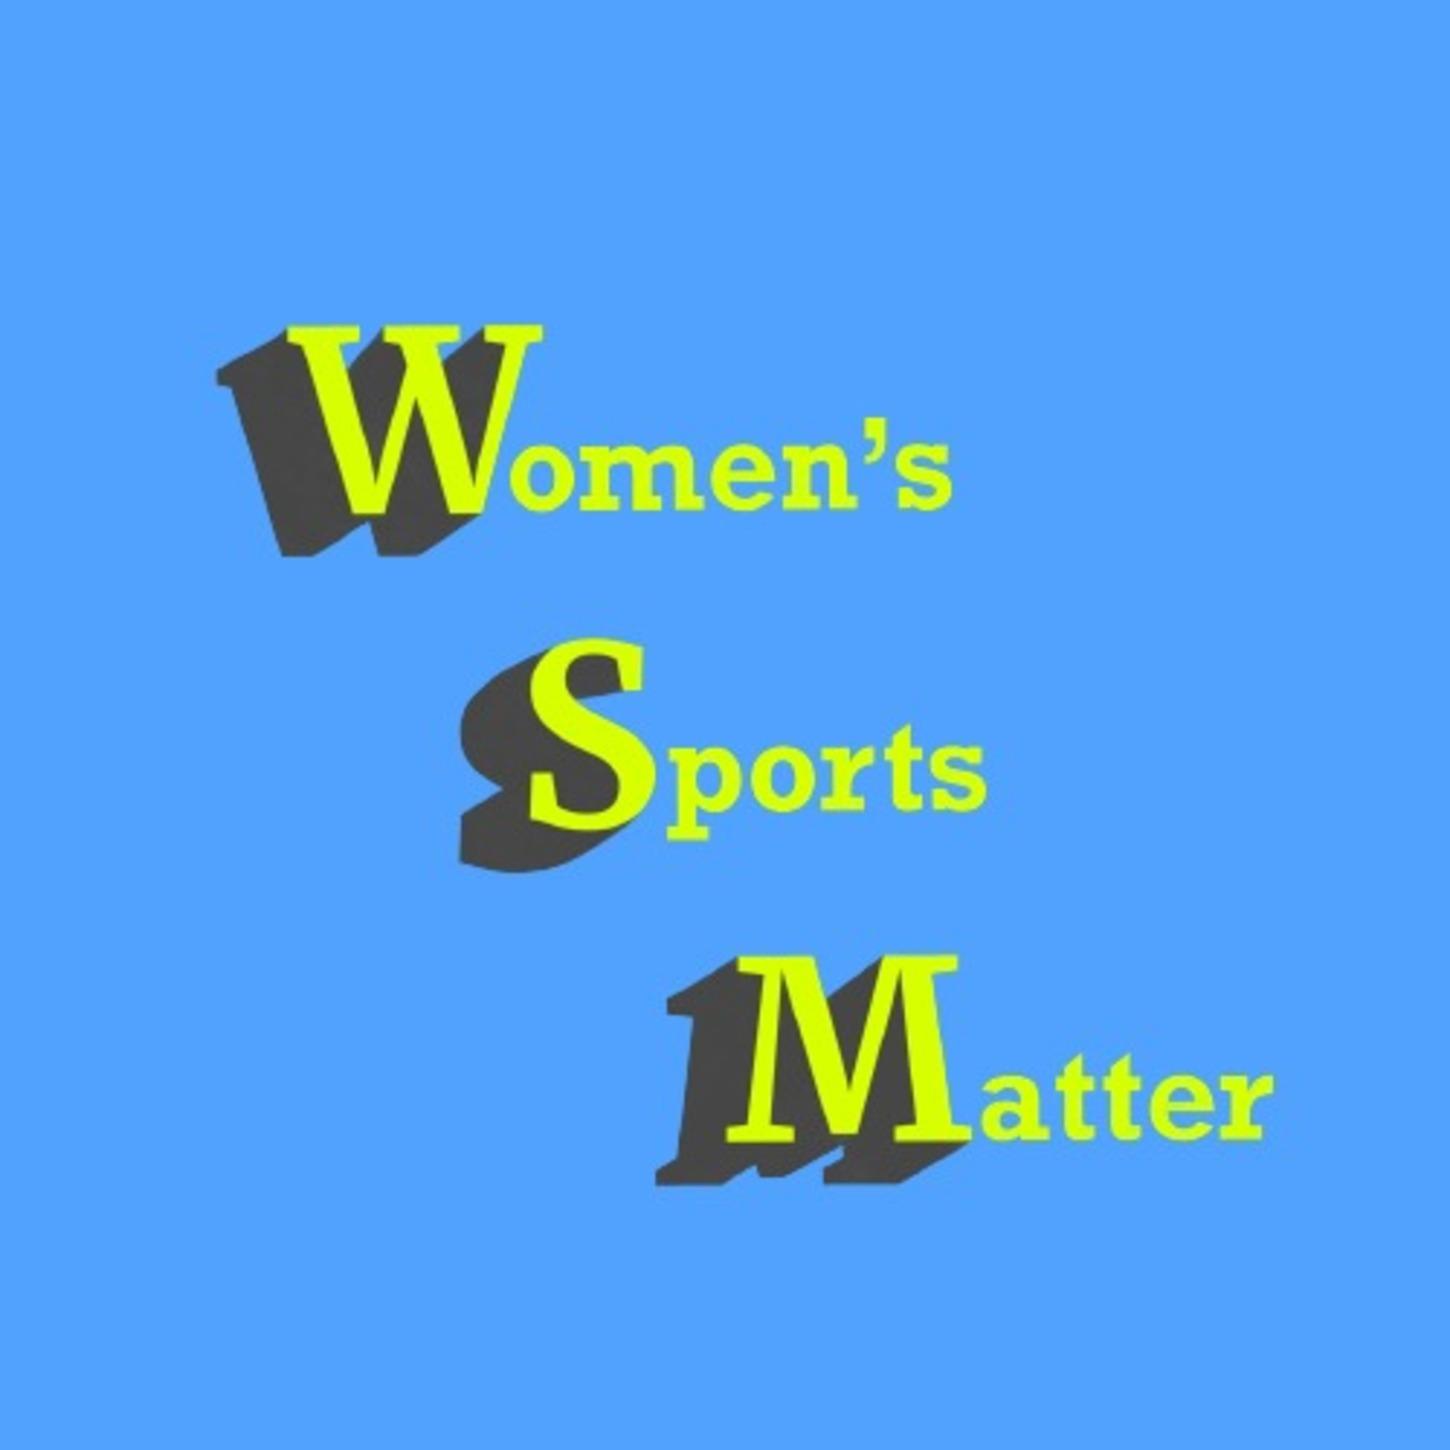 Women's Sports Matter